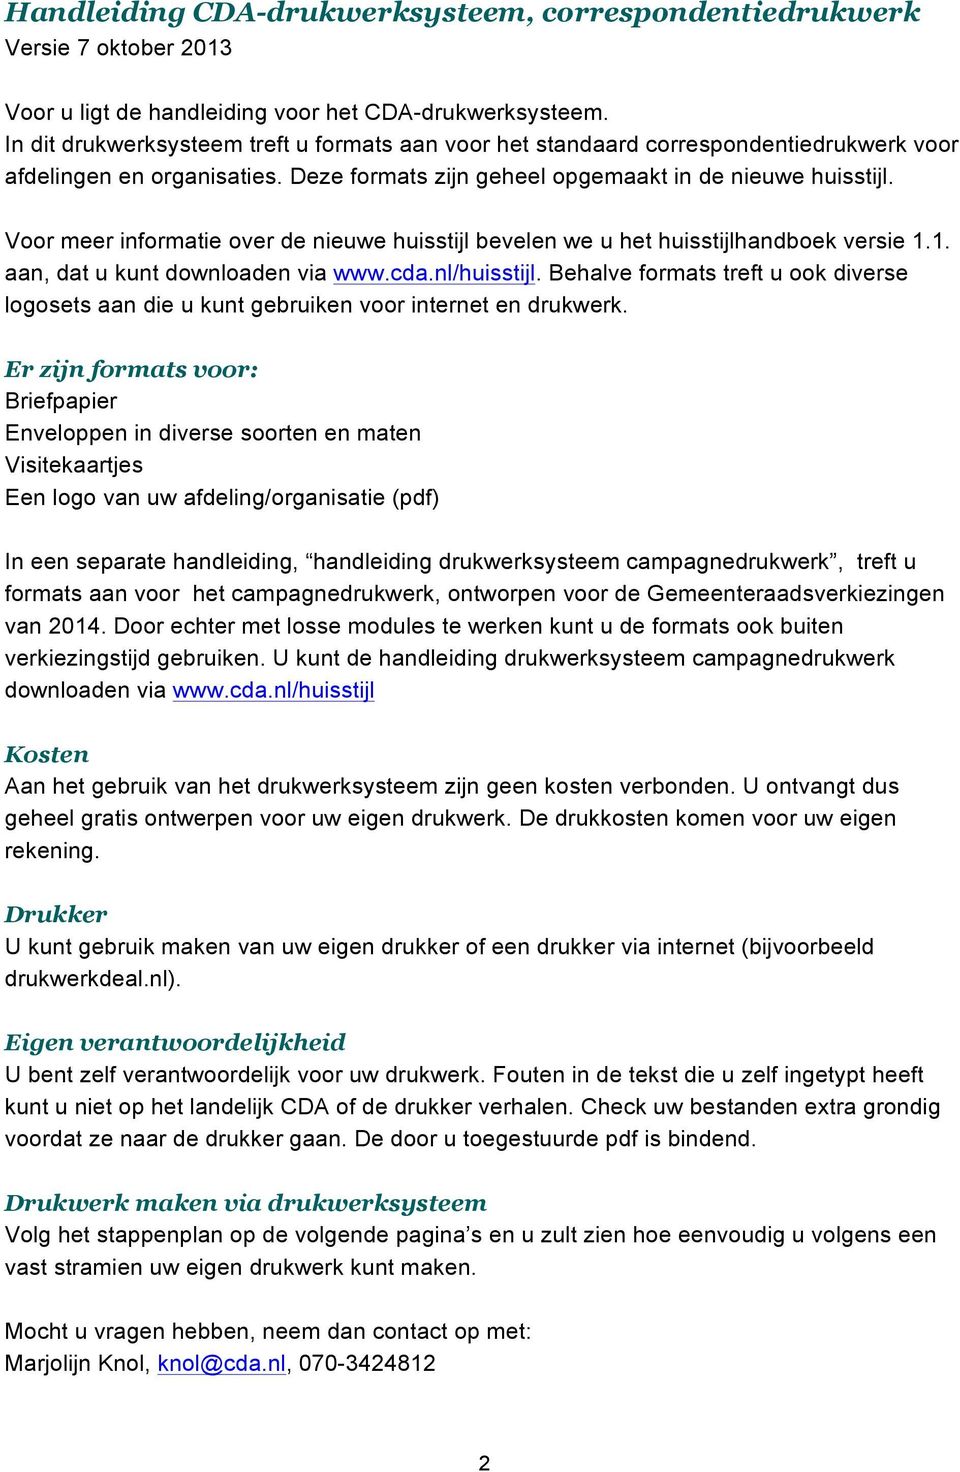 Voor meer informatie over de nieuwe huisstijl bevelen we u het huisstijlhandboek versie 1.1. aan, dat u kunt downloaden via www.cda.nl/huisstijl.